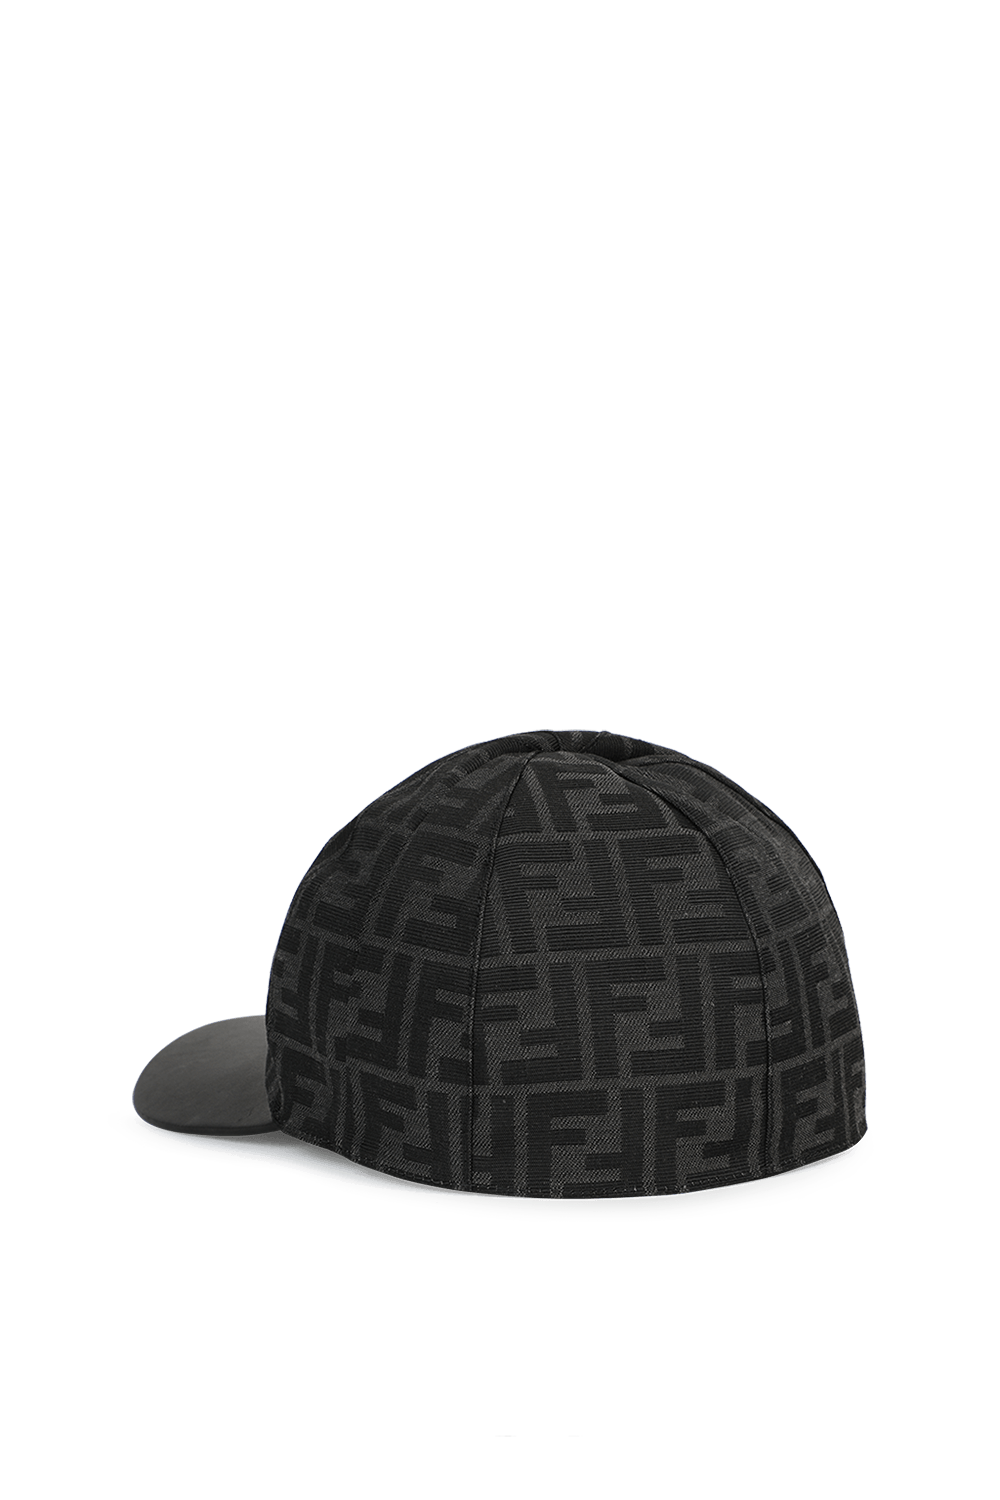 כובע בייסבול דו צדדי שחור עם פרינט מונוגרמי FENDI